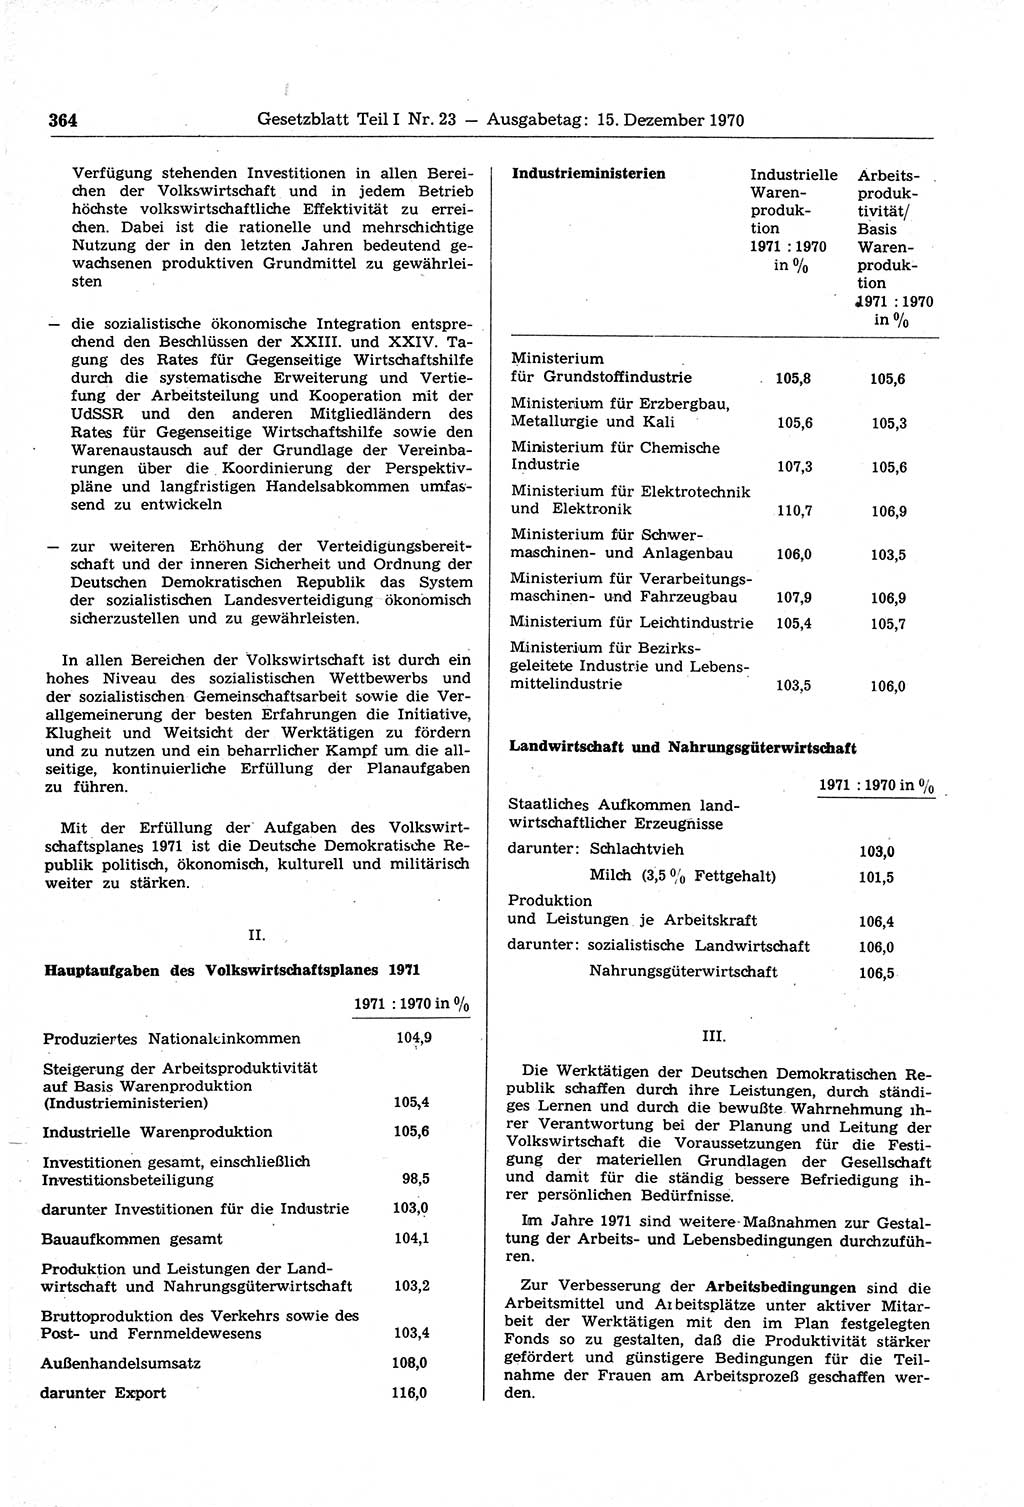 Gesetzblatt (GBl.) der Deutschen Demokratischen Republik (DDR) Teil Ⅰ 1970, Seite 364 (GBl. DDR Ⅰ 1970, S. 364)